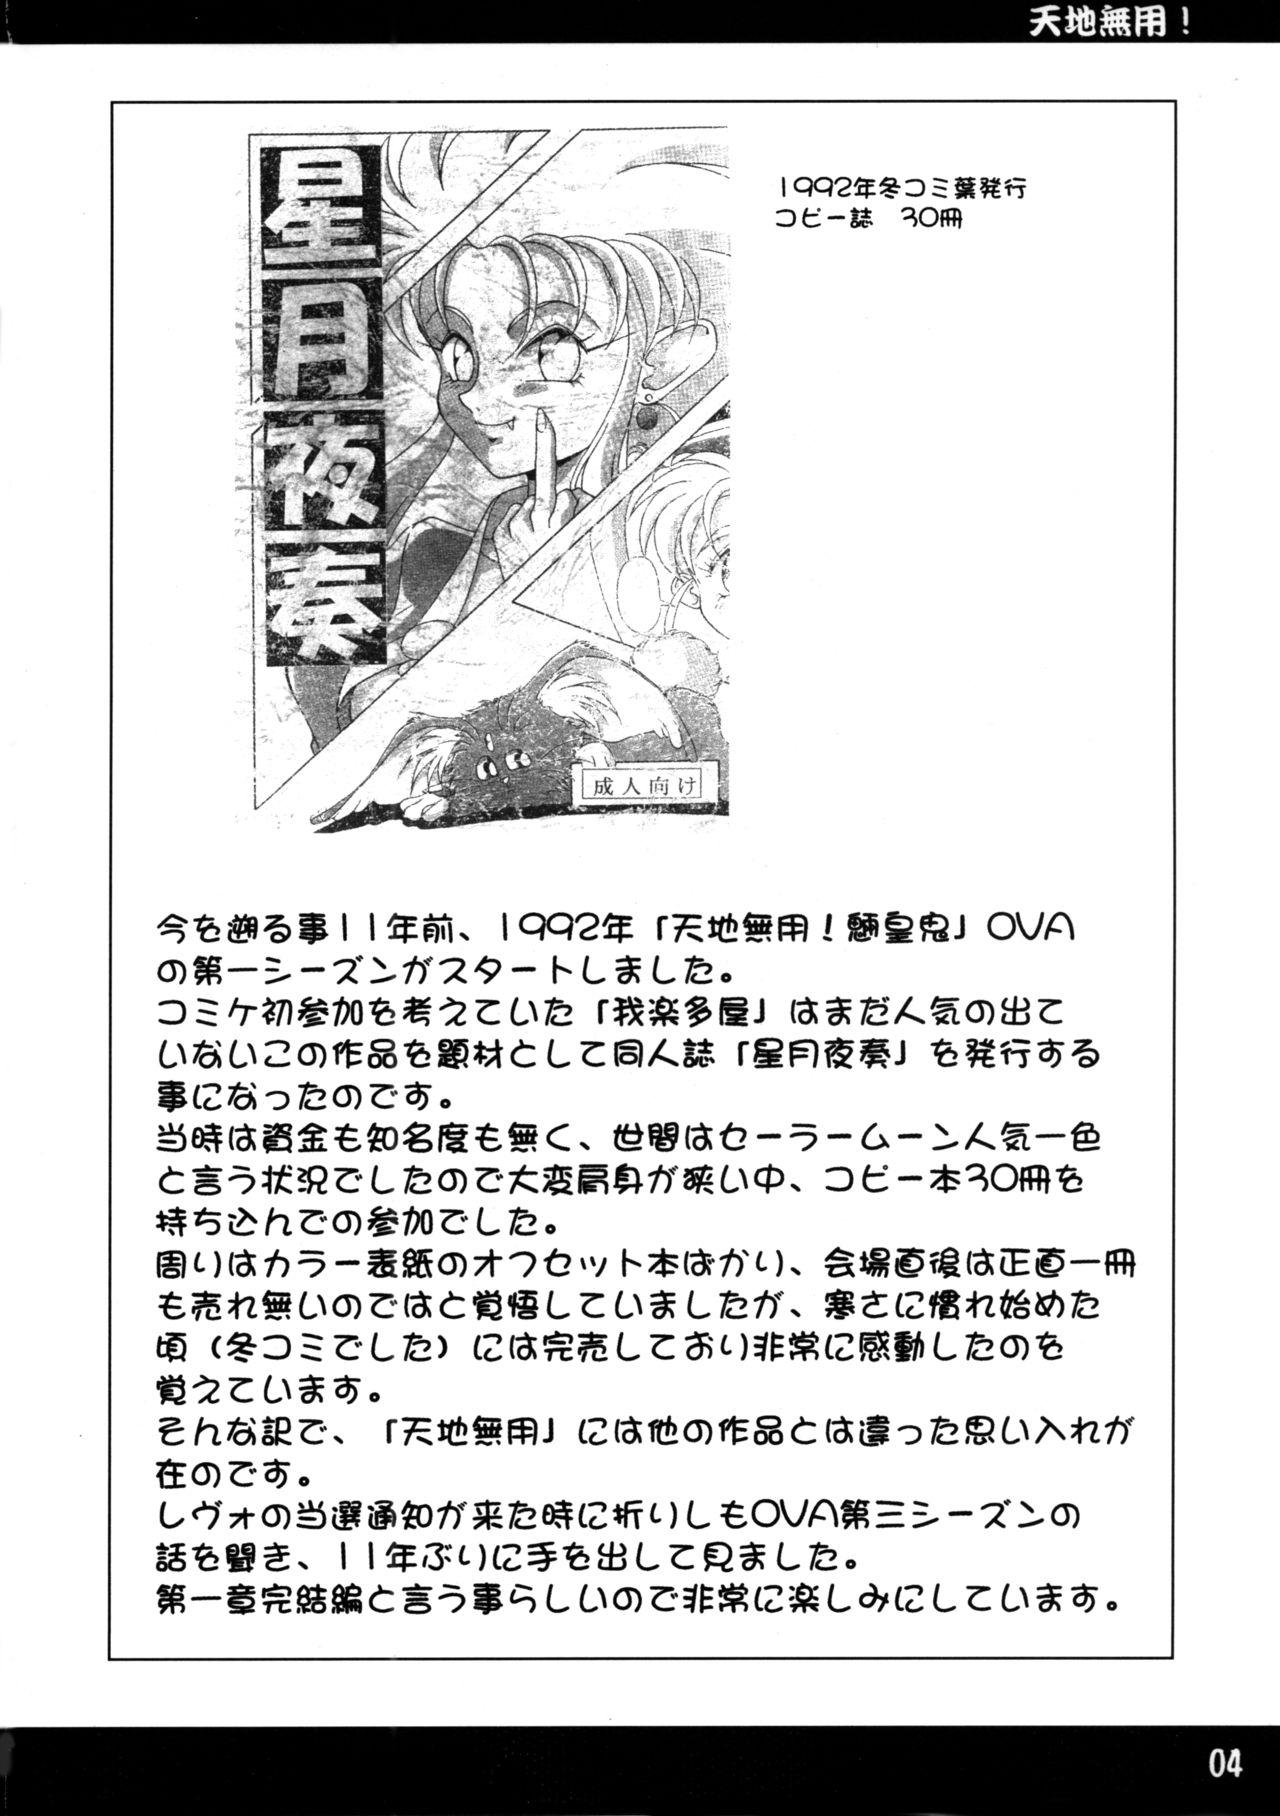 Eng Sub Kuro Hachisu Vol. 4 - Tenchi muyo Chacal - Page 3